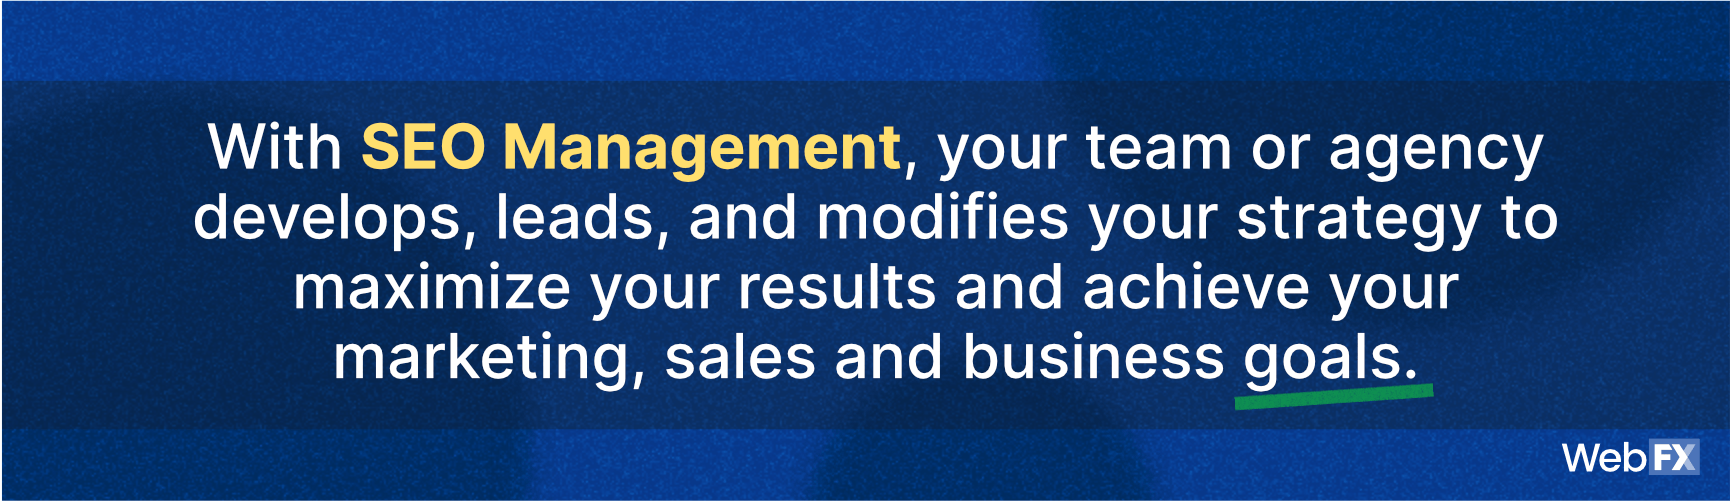 通过SEO管理，您的团队或机构开发、领导和修改您的策略，以最大化您的结果，实现您的市场、销售和业务目标。